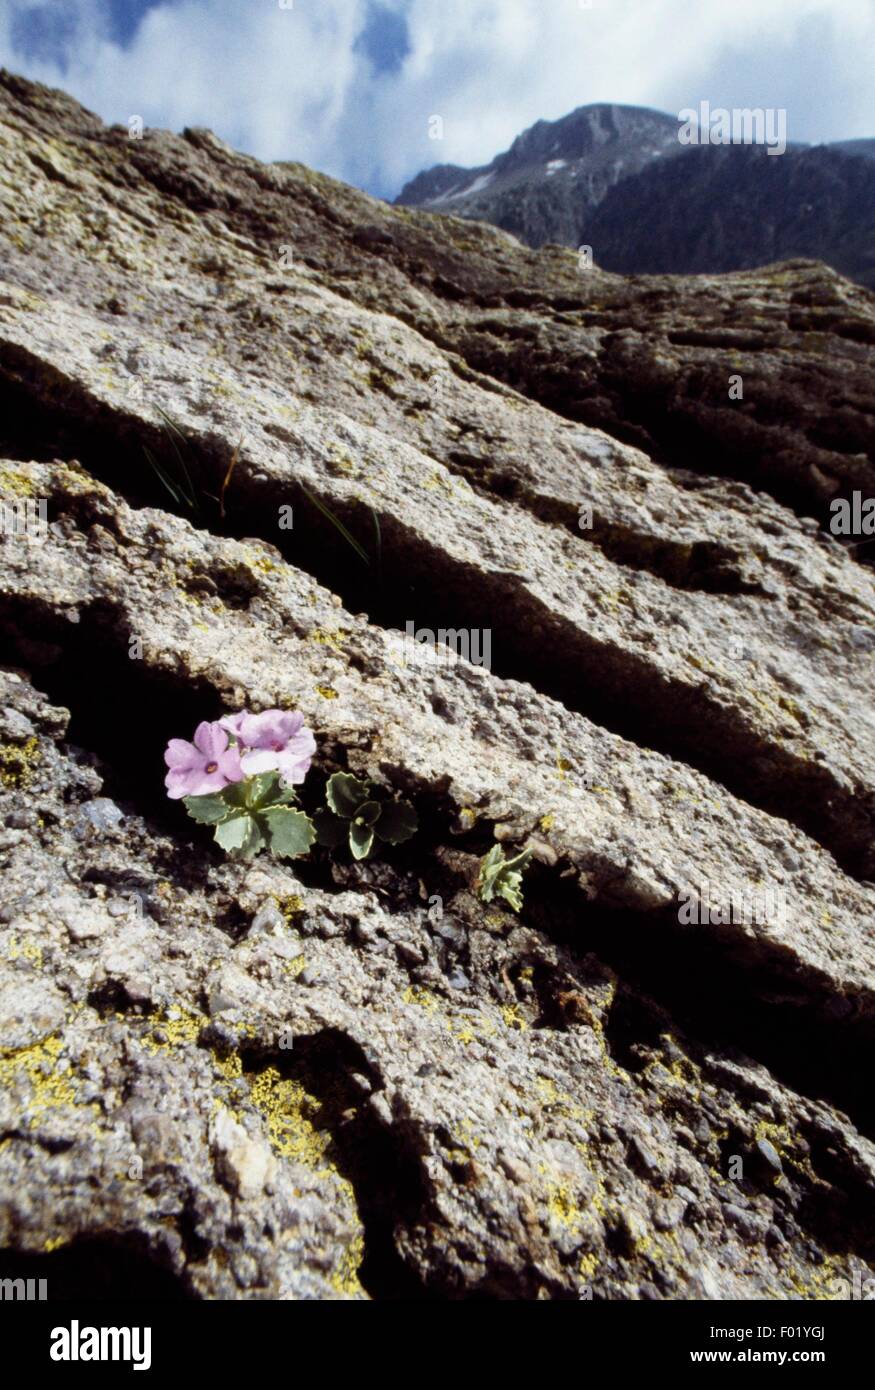 Marginate primrose (Primula marginata Curtis), Vallee des Merveilles, Mercantour National Park (Parc national du Mercantour), Provence-Alpes-Cote d'Azur, France. Stock Photo